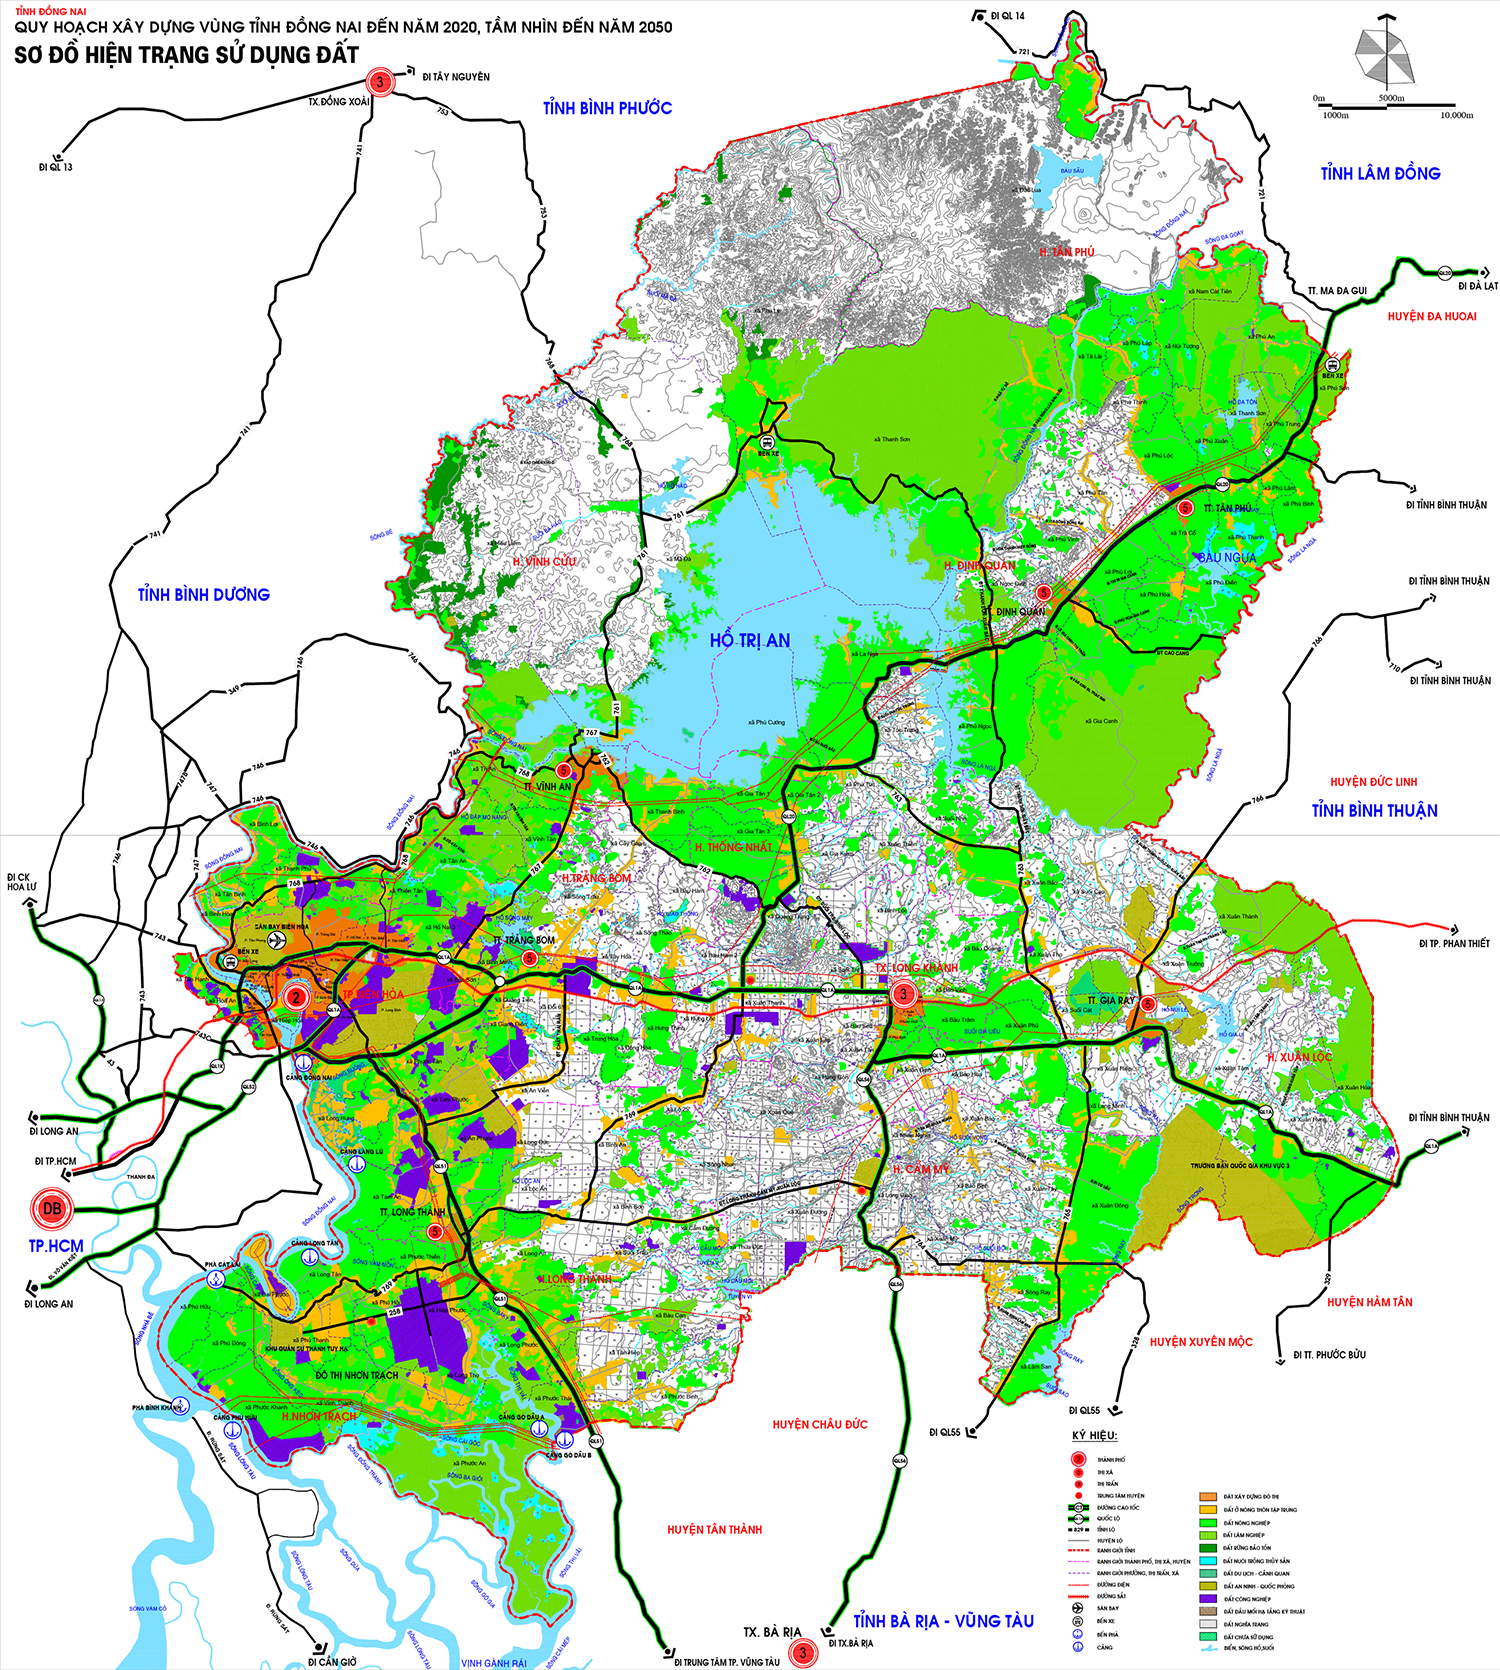 Bản đồ quy hoạch tỉnh Đồng Nai - Bản đồ quy hoạch sử dụng đất tỉnh Đồng Nai